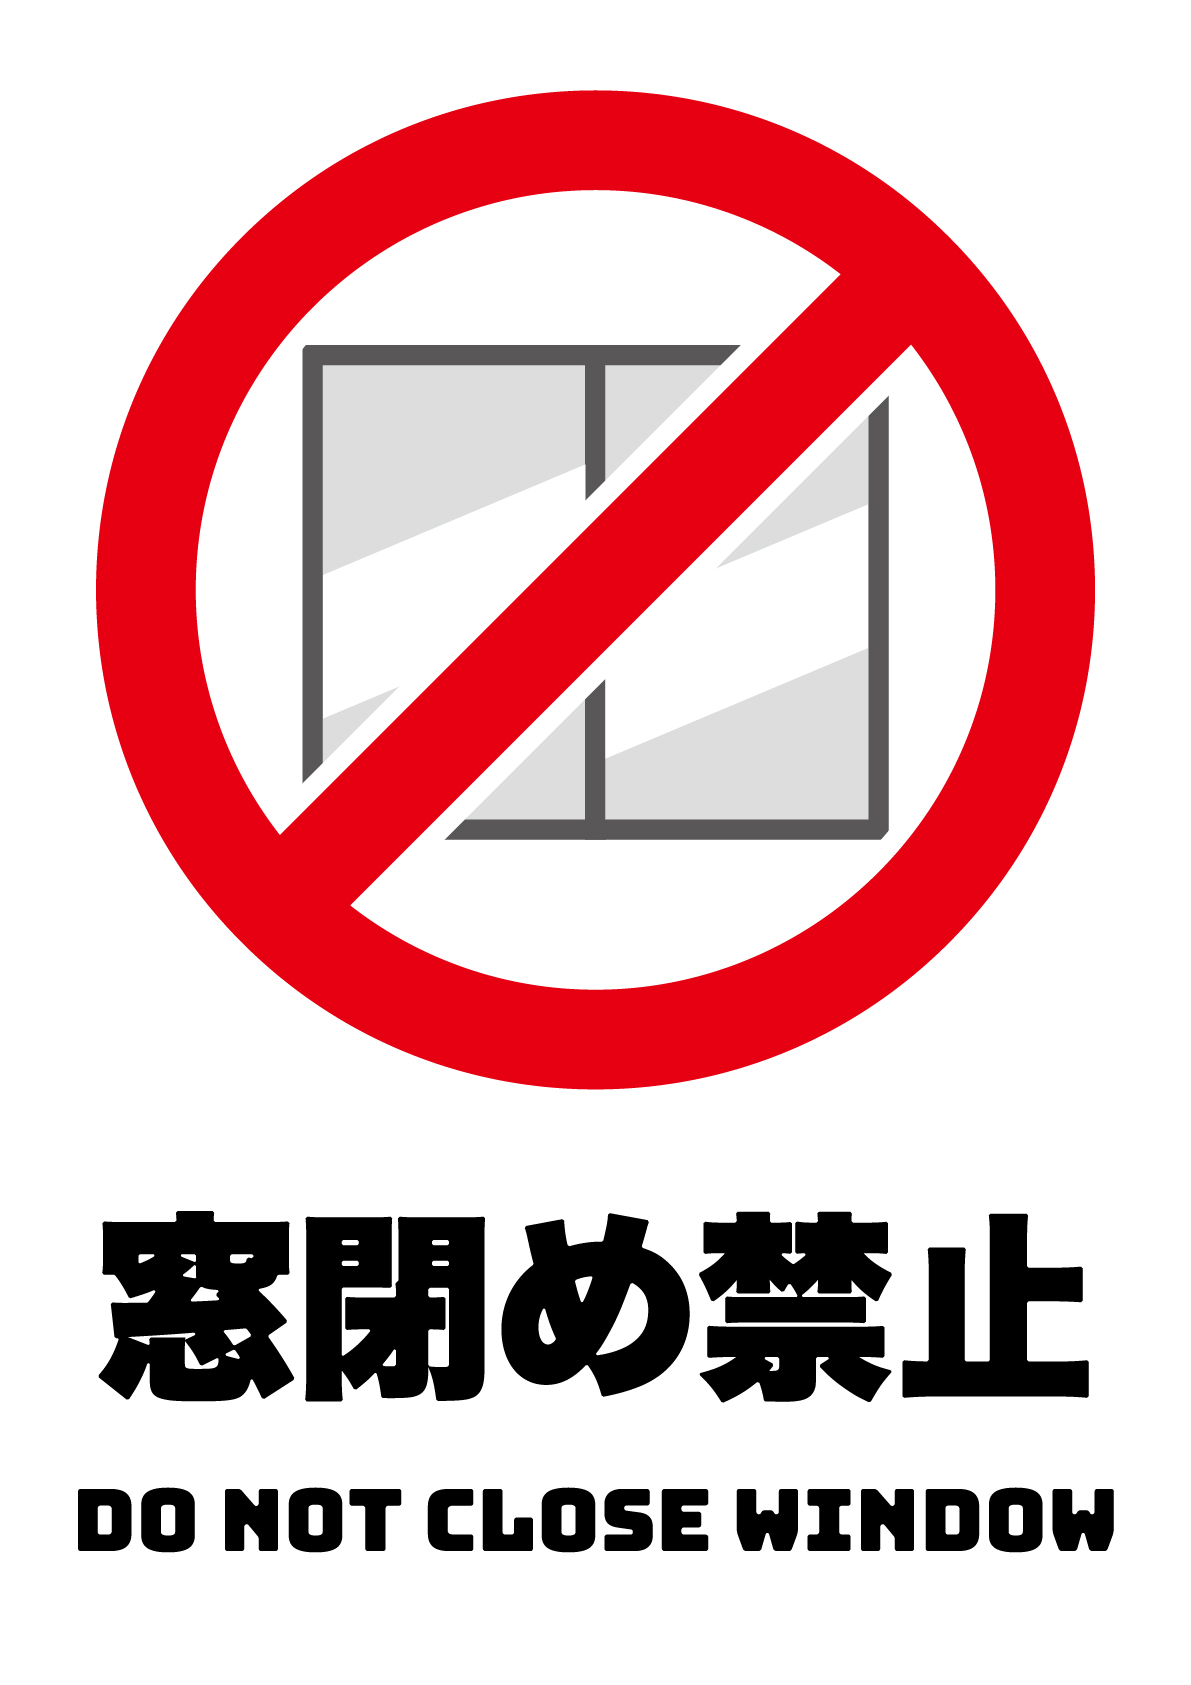 窓閉め禁止の張り紙